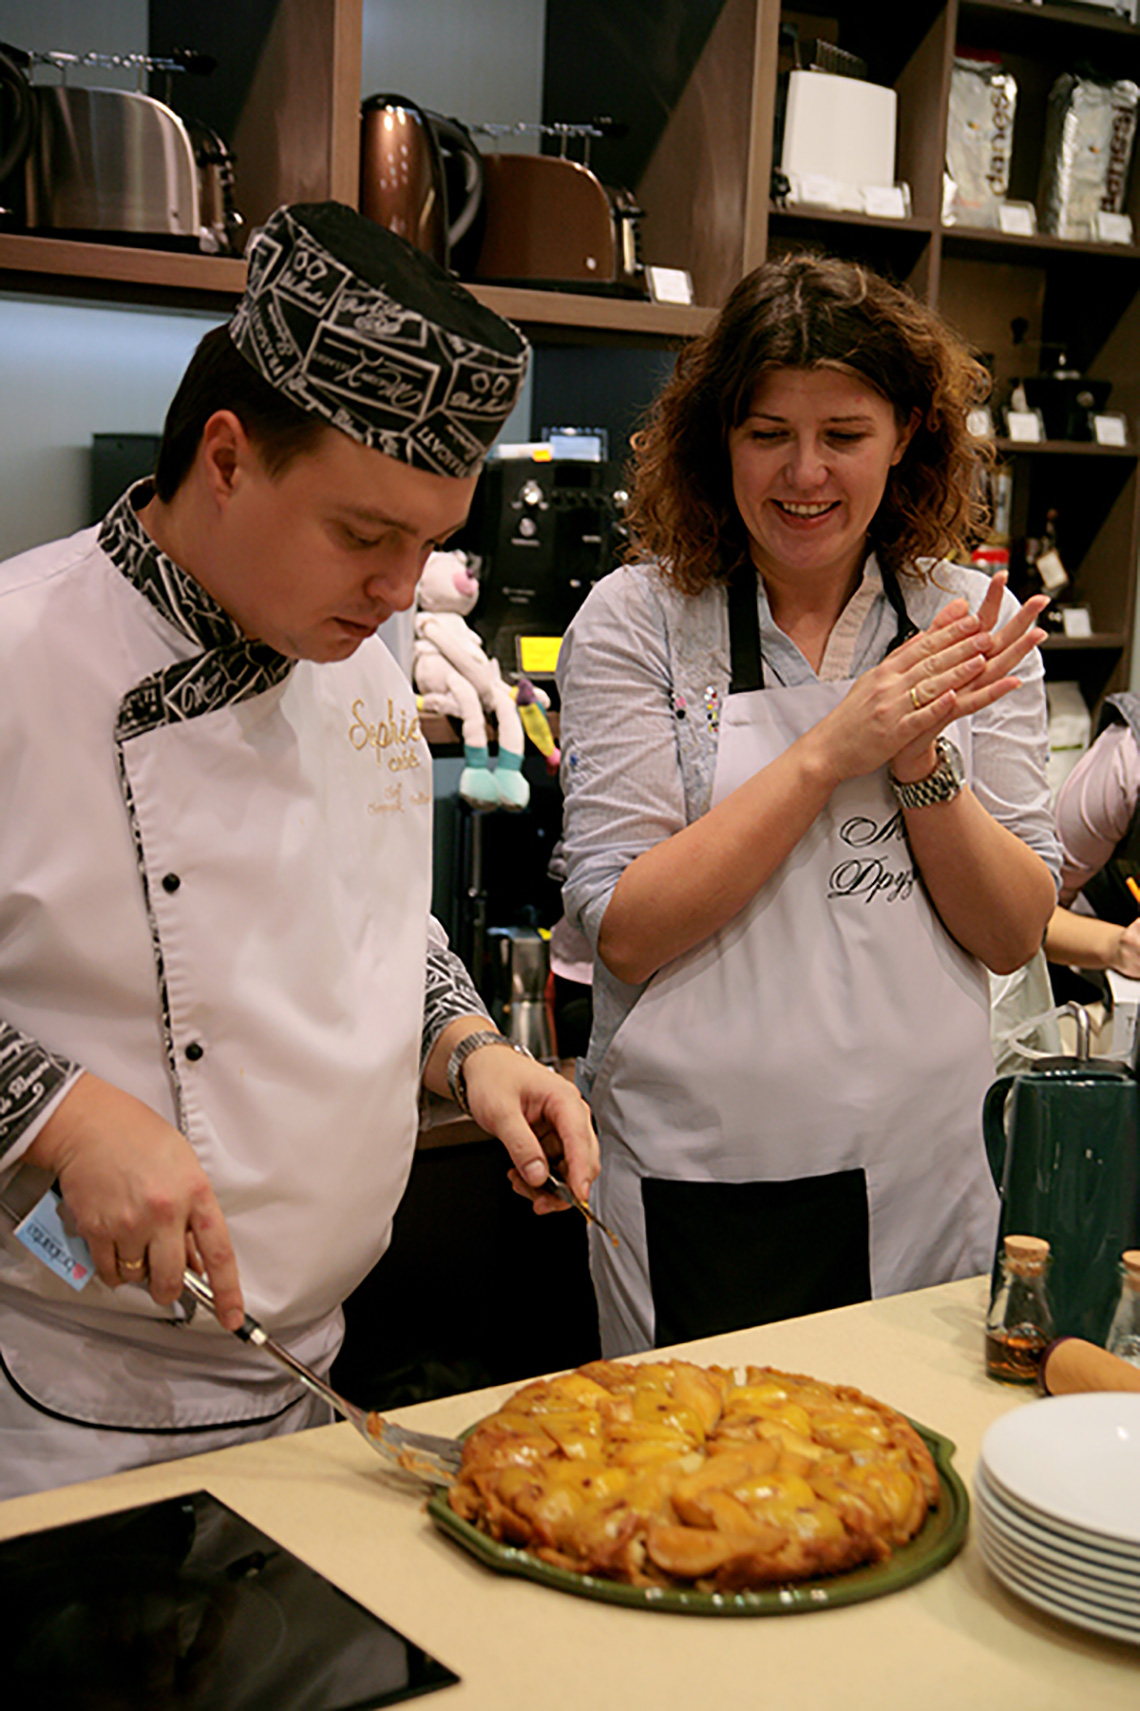 Готовый пирог. Кулинарная школа «Мои друзья» провела цикл кулинарных мастер-классов для сети магазинов посуды Promenu.